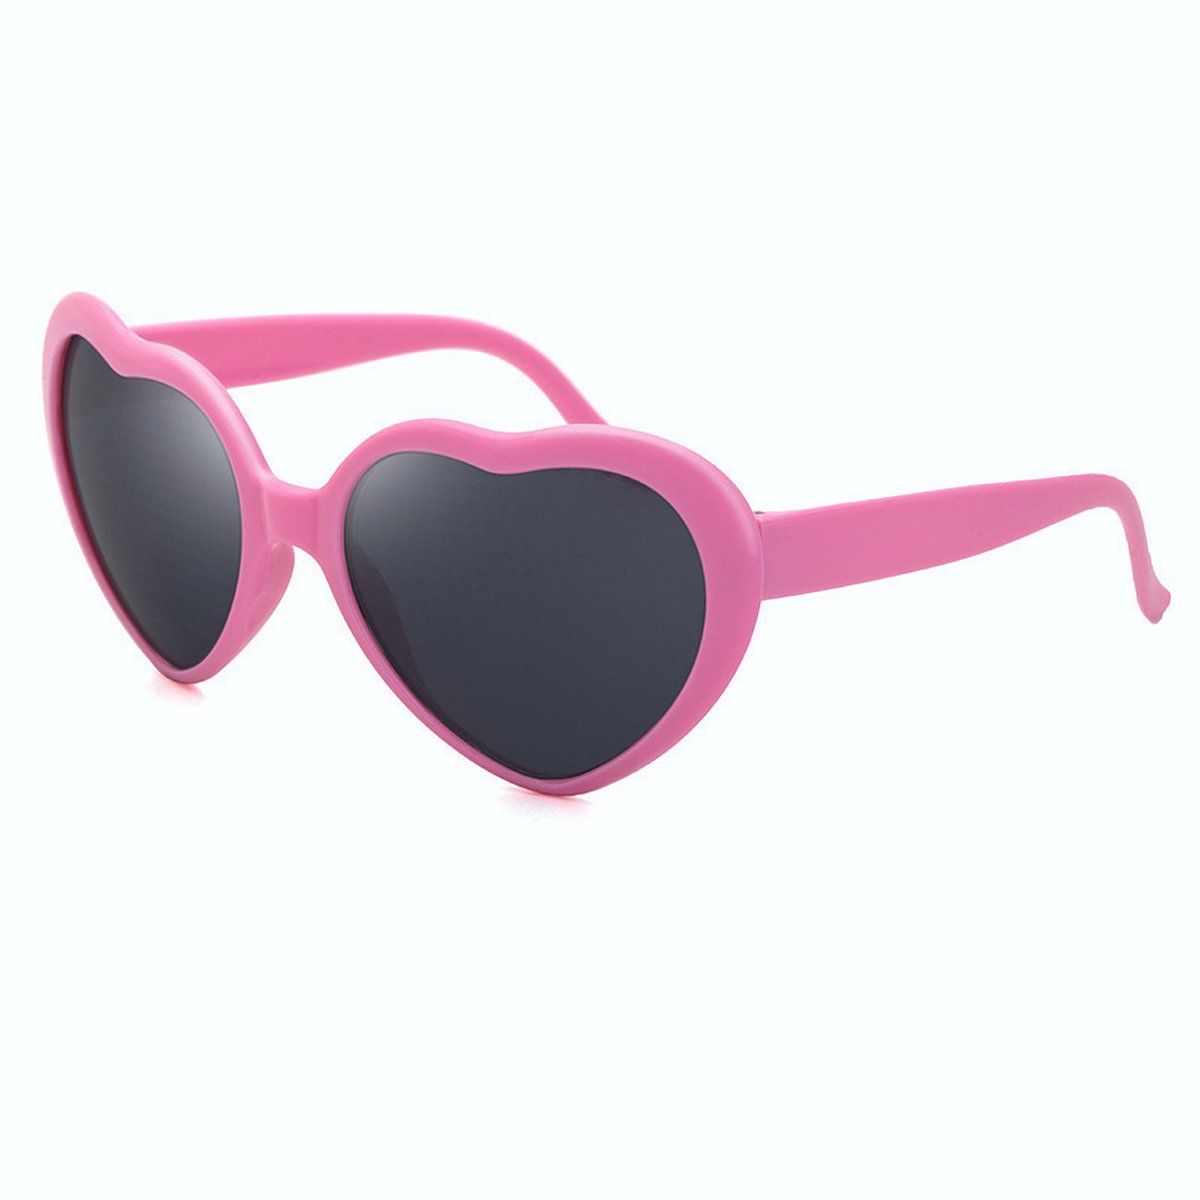 DAEBAK Kleurvolle Magische vrouwen hartjes zonnebril in hart vorm [Pink / Roze] Festival Sunglasses dames